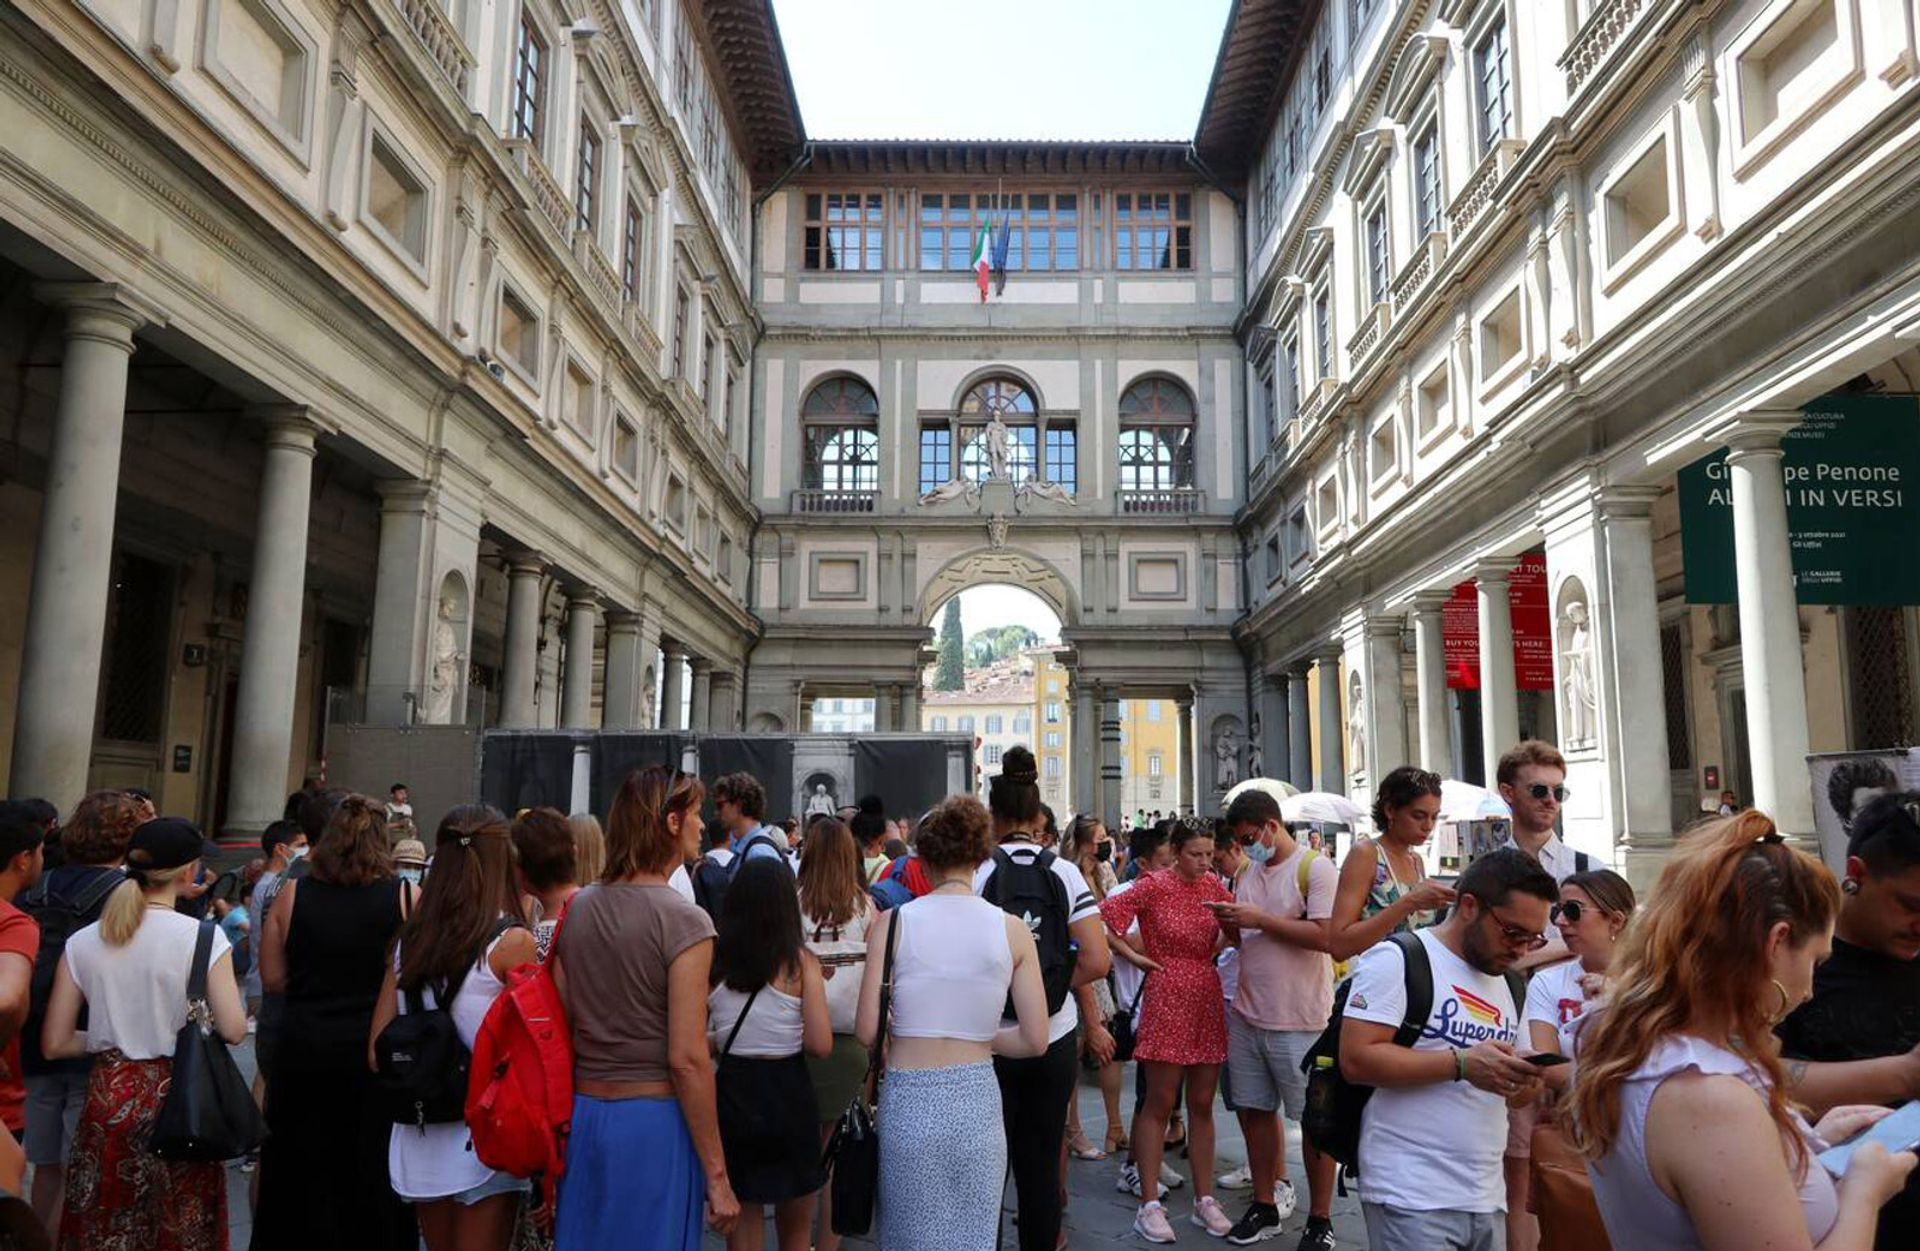 גלריית אופיצי בפירנצה נקטה בצעדים משפטיים כדי למנוע מצד שלישי להפעיל אתרי כרטיסים מטעים


